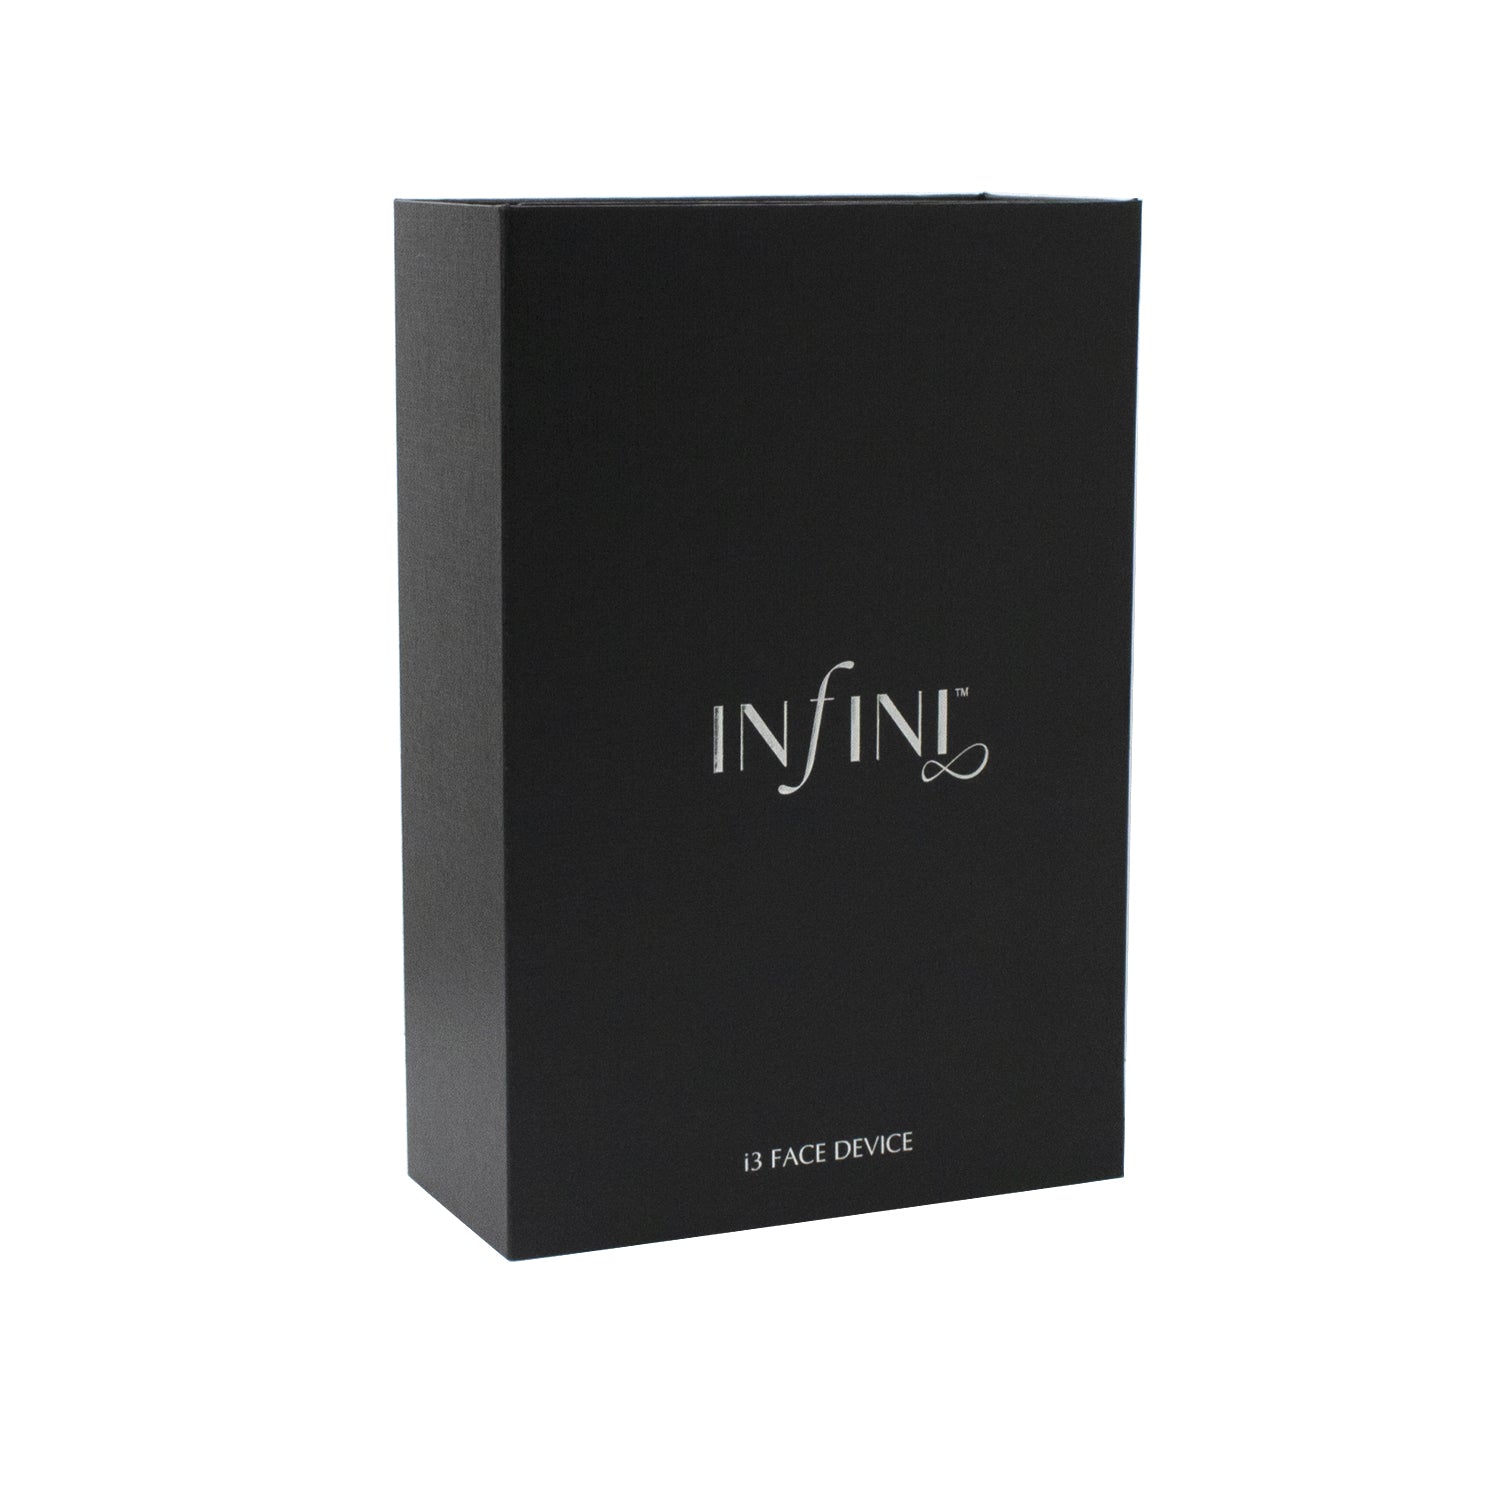 Infini i3 Face Device